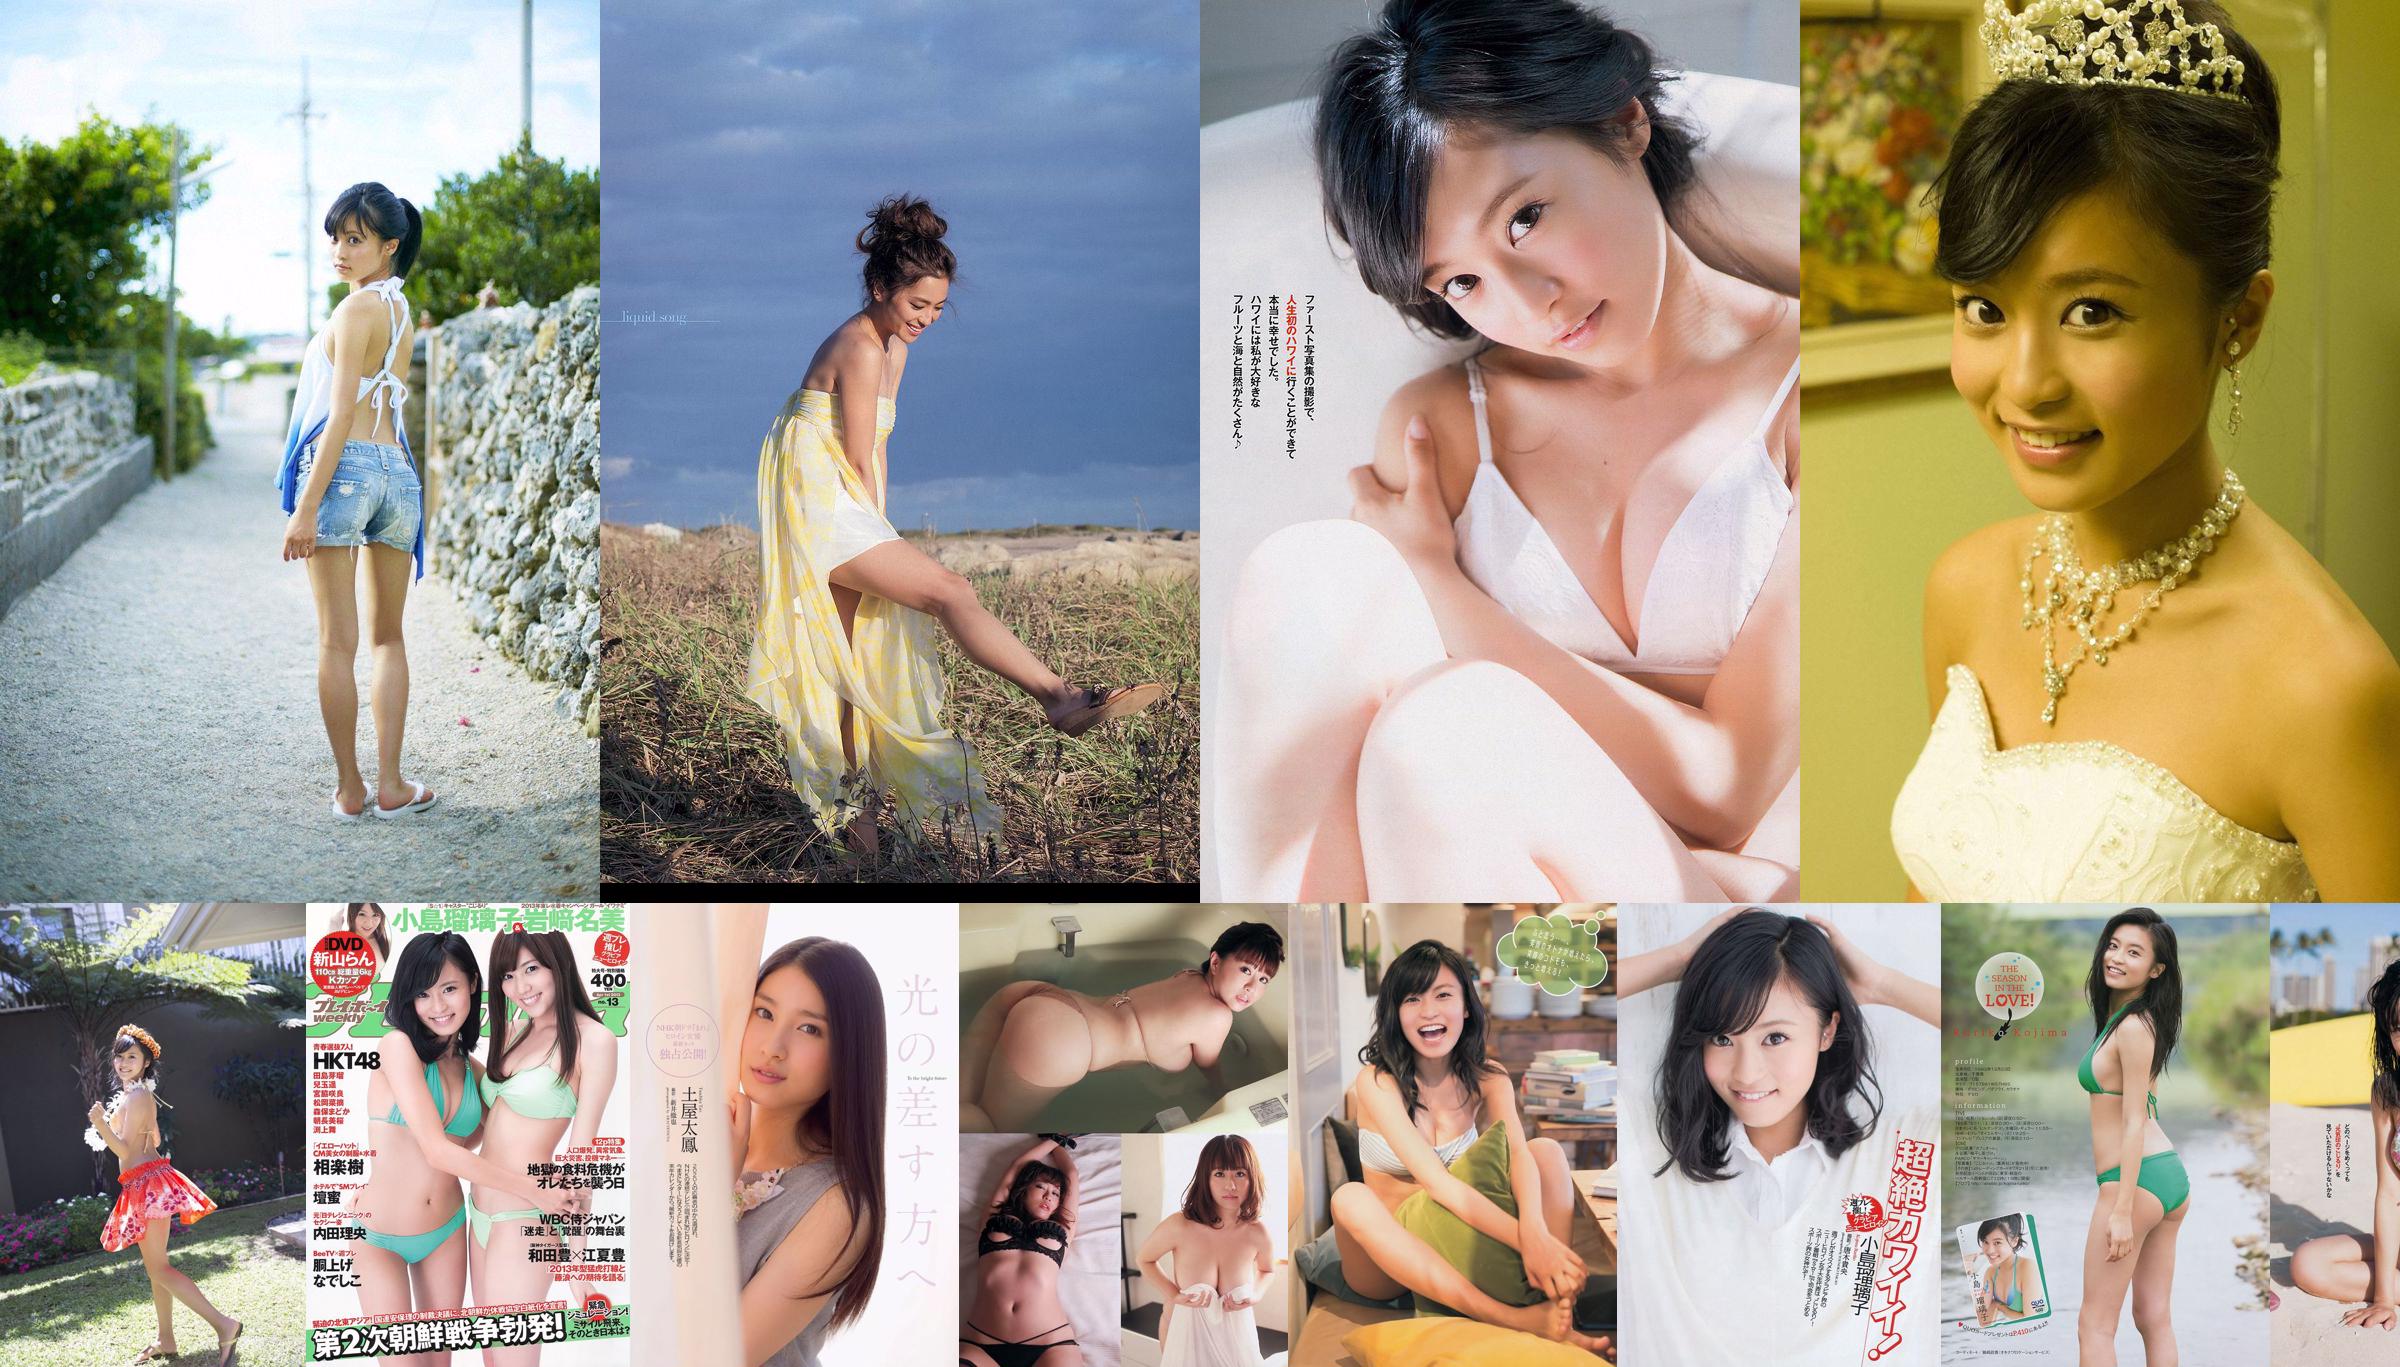 [Young Magazine] Kojima Ruriko 2014 No.33 Photo Magazine No.af5e8a Page 2